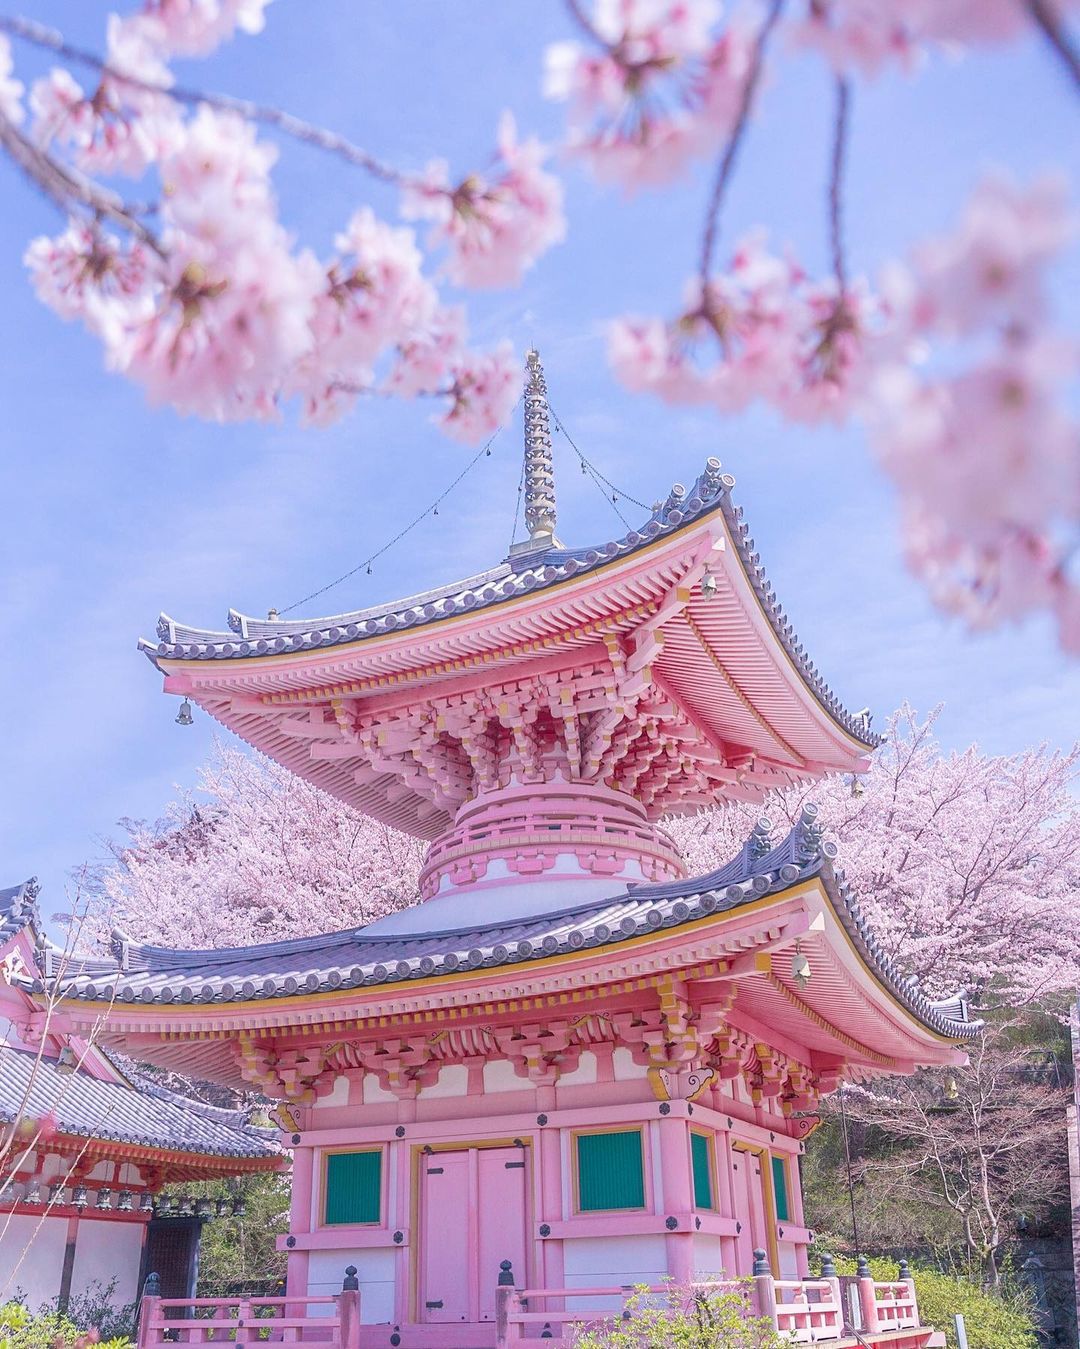 今最も映える春の絶景はこれ Retrip日本の今週のおすすめスポット7選 Retrip リトリップ